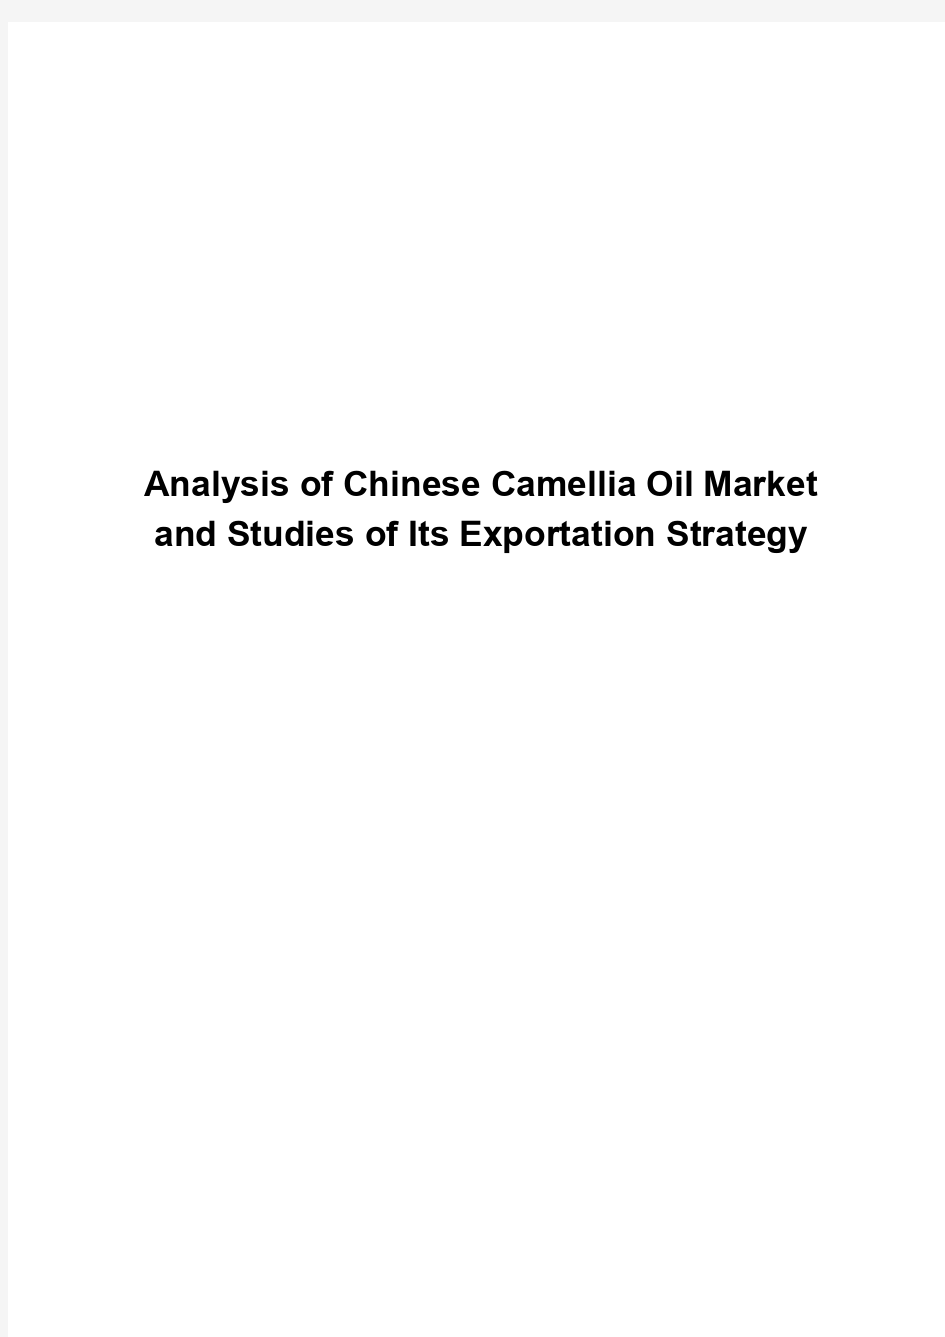 中国山茶油市场现状分析及出口策略研究